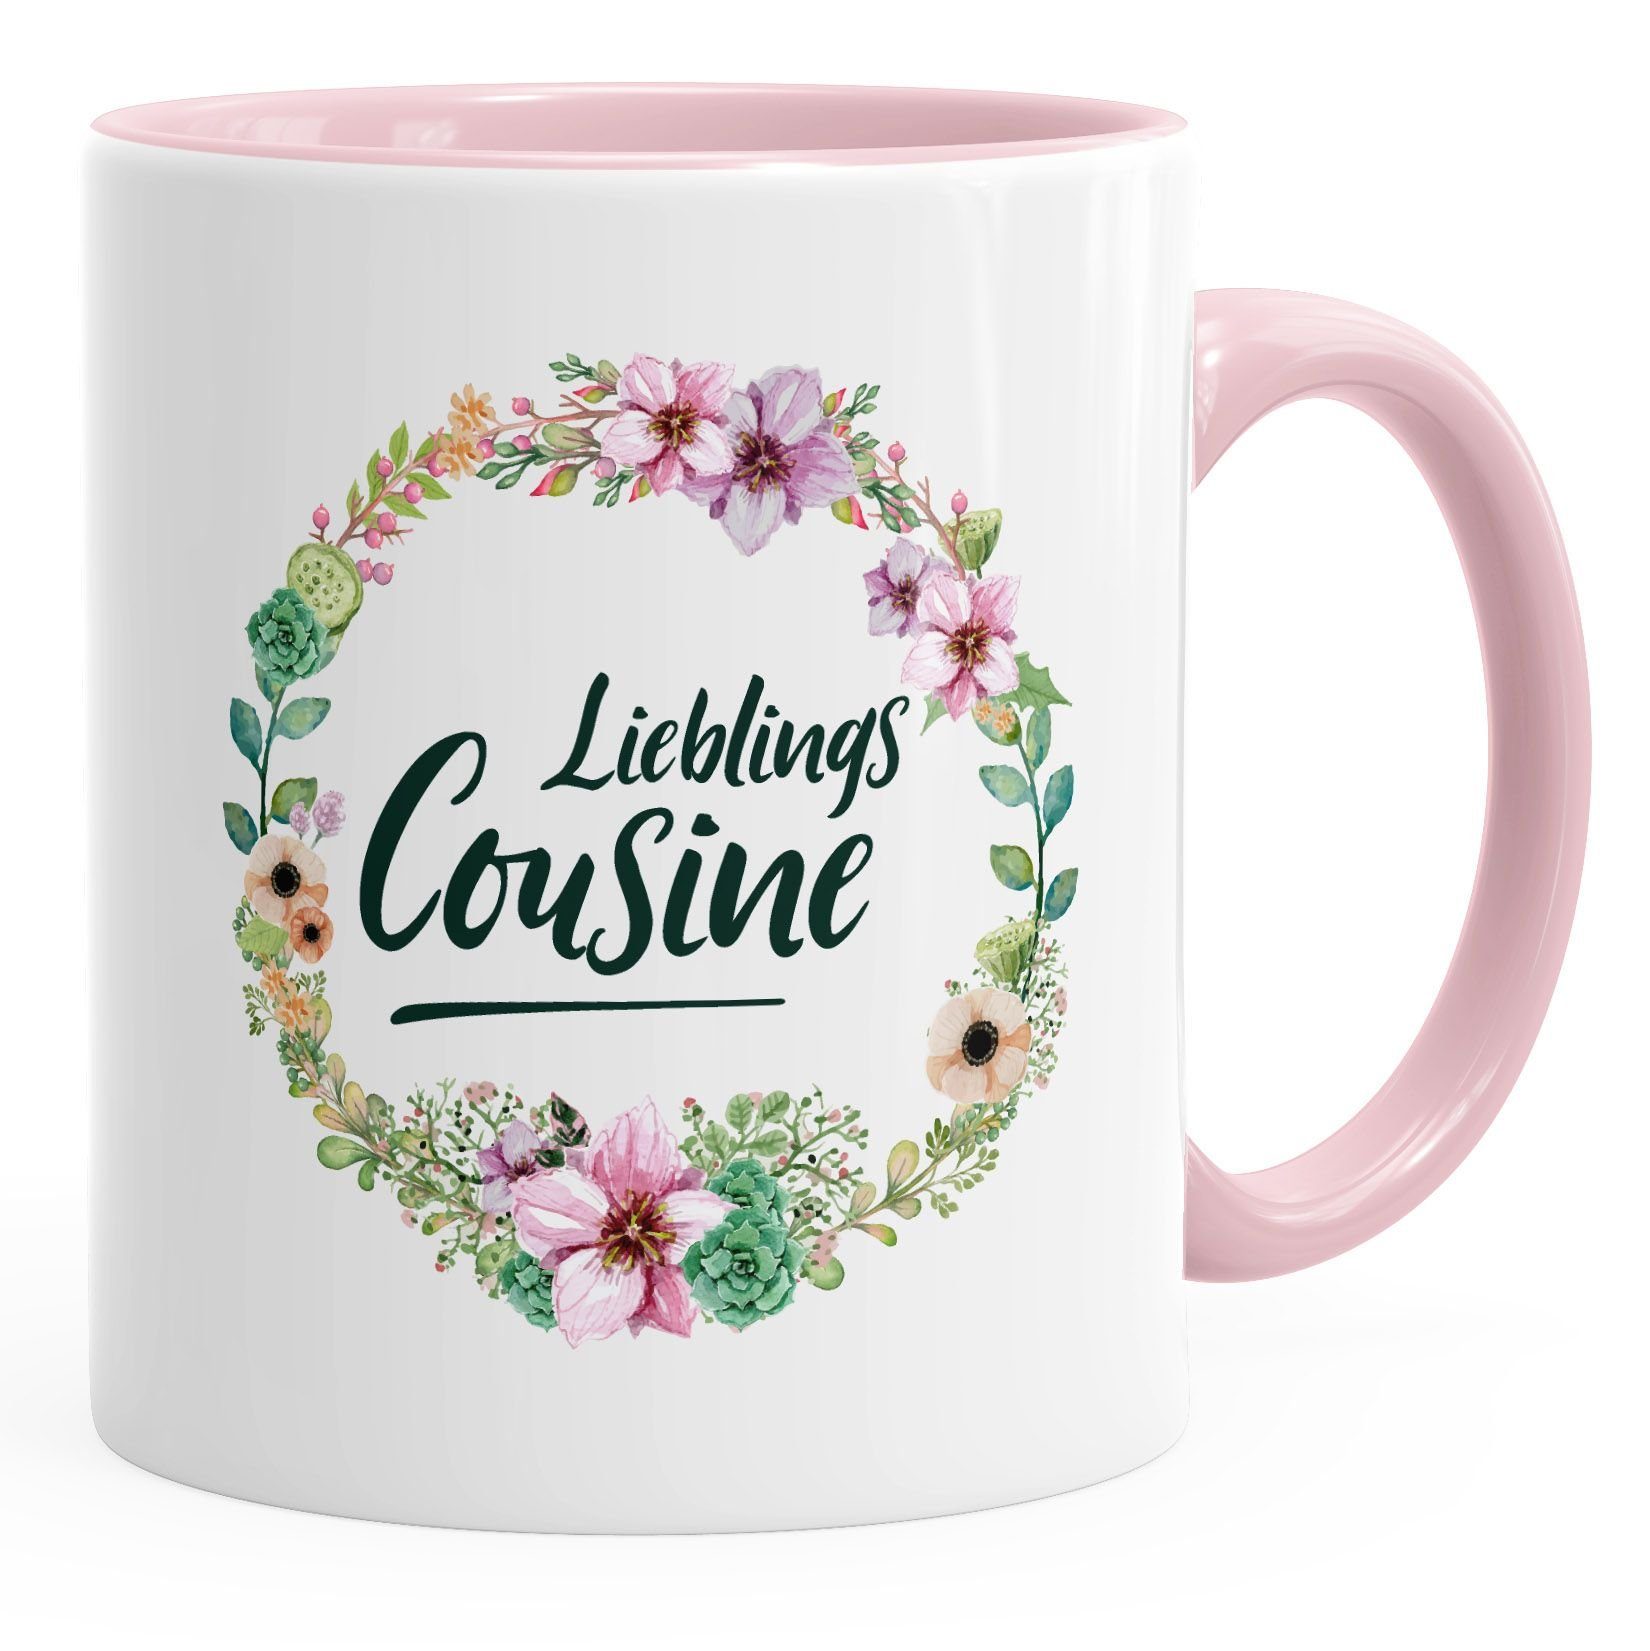 MoonWorks Tasse Kaffee-Tasse Geschenktasse Geschenk Bordüre Familie Blüten Blumenranke Cousine Lieblingscousine Keramik MoonWorks®, Blumen rosa für